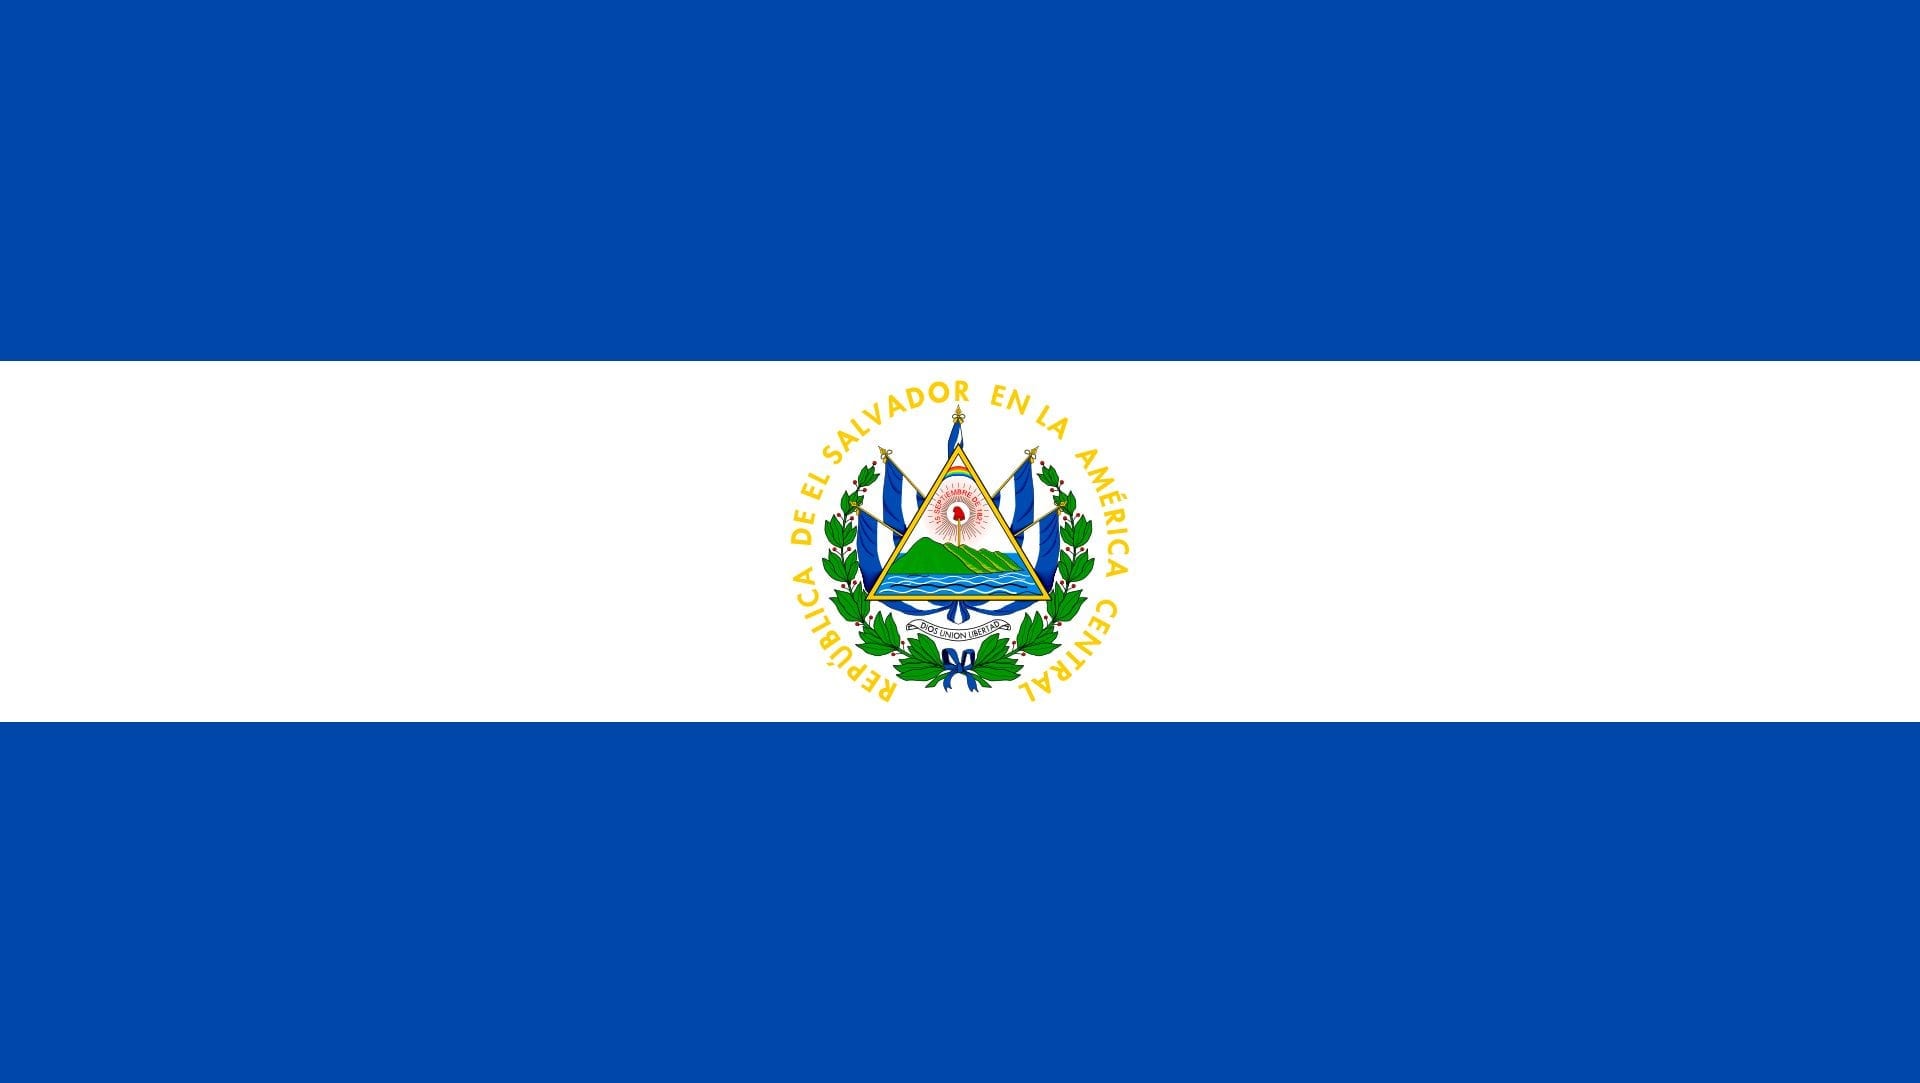 Facts of El Salvador